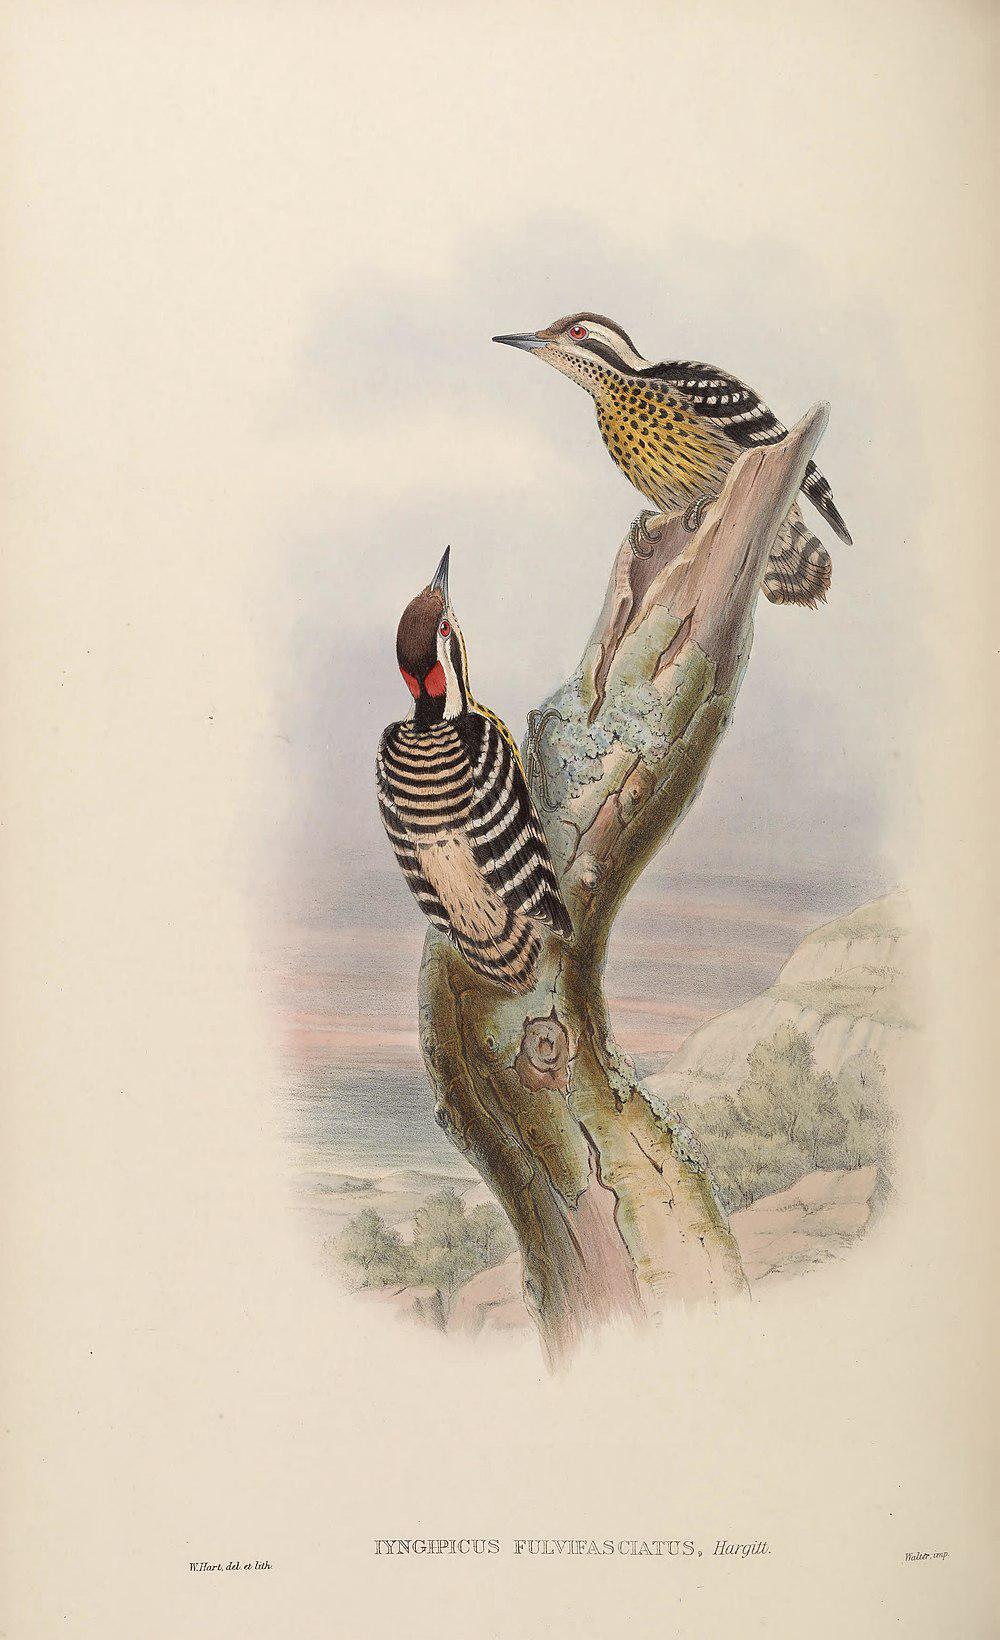 菲律宾啄木鸟 / Philippine Pygmy Woodpecker / Yungipicus maculatus